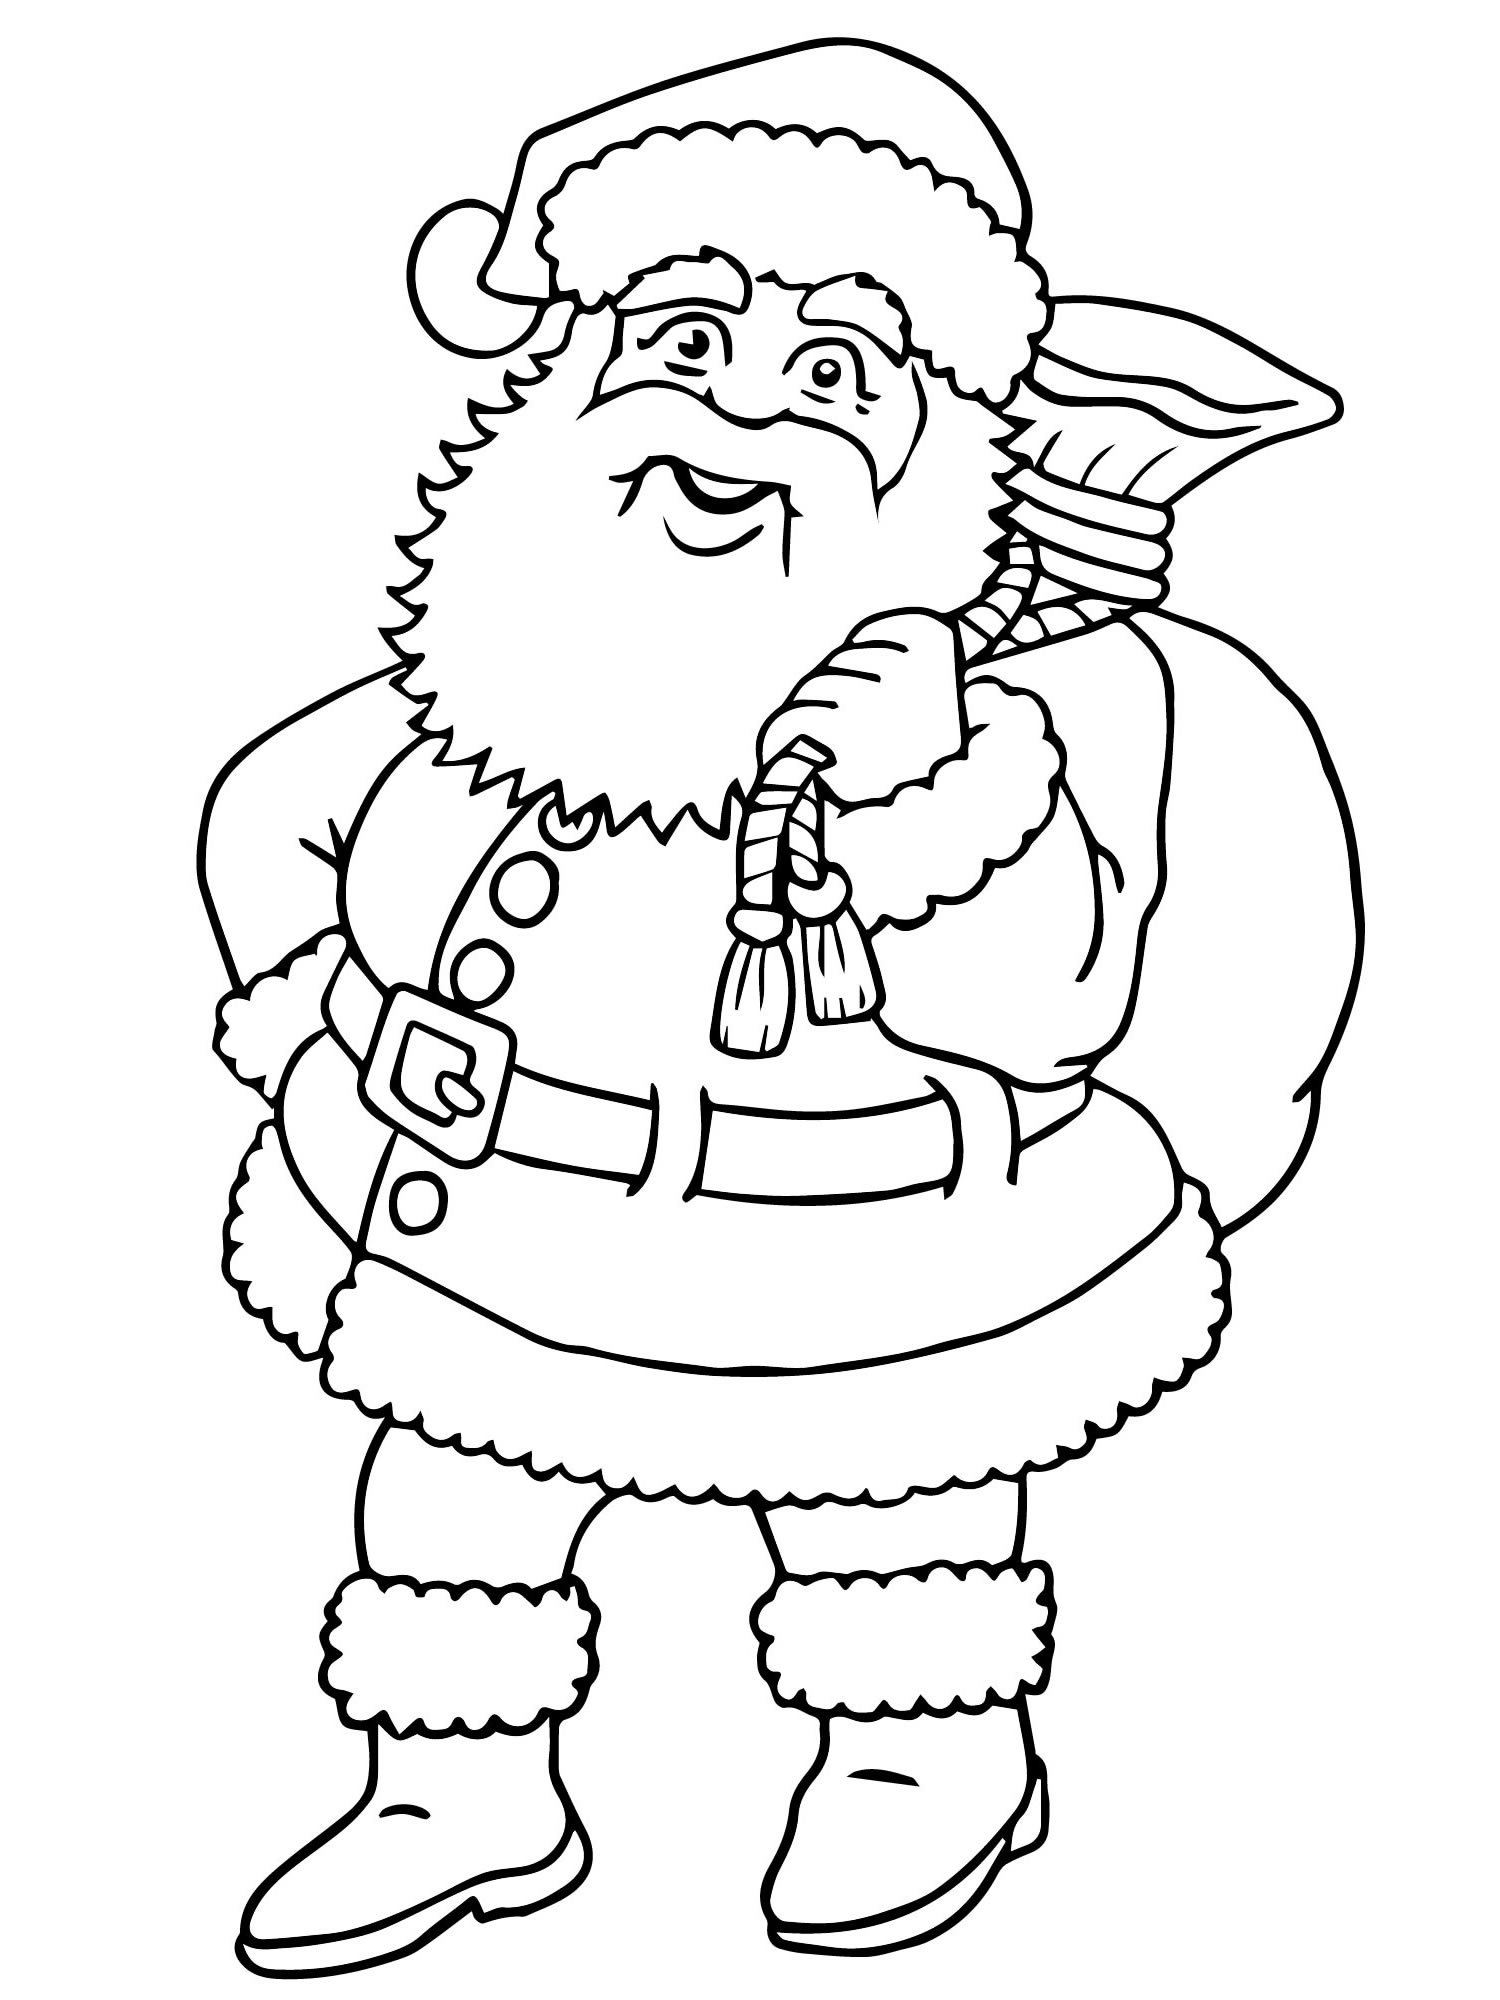 Санта Клаус рисунок раскраска